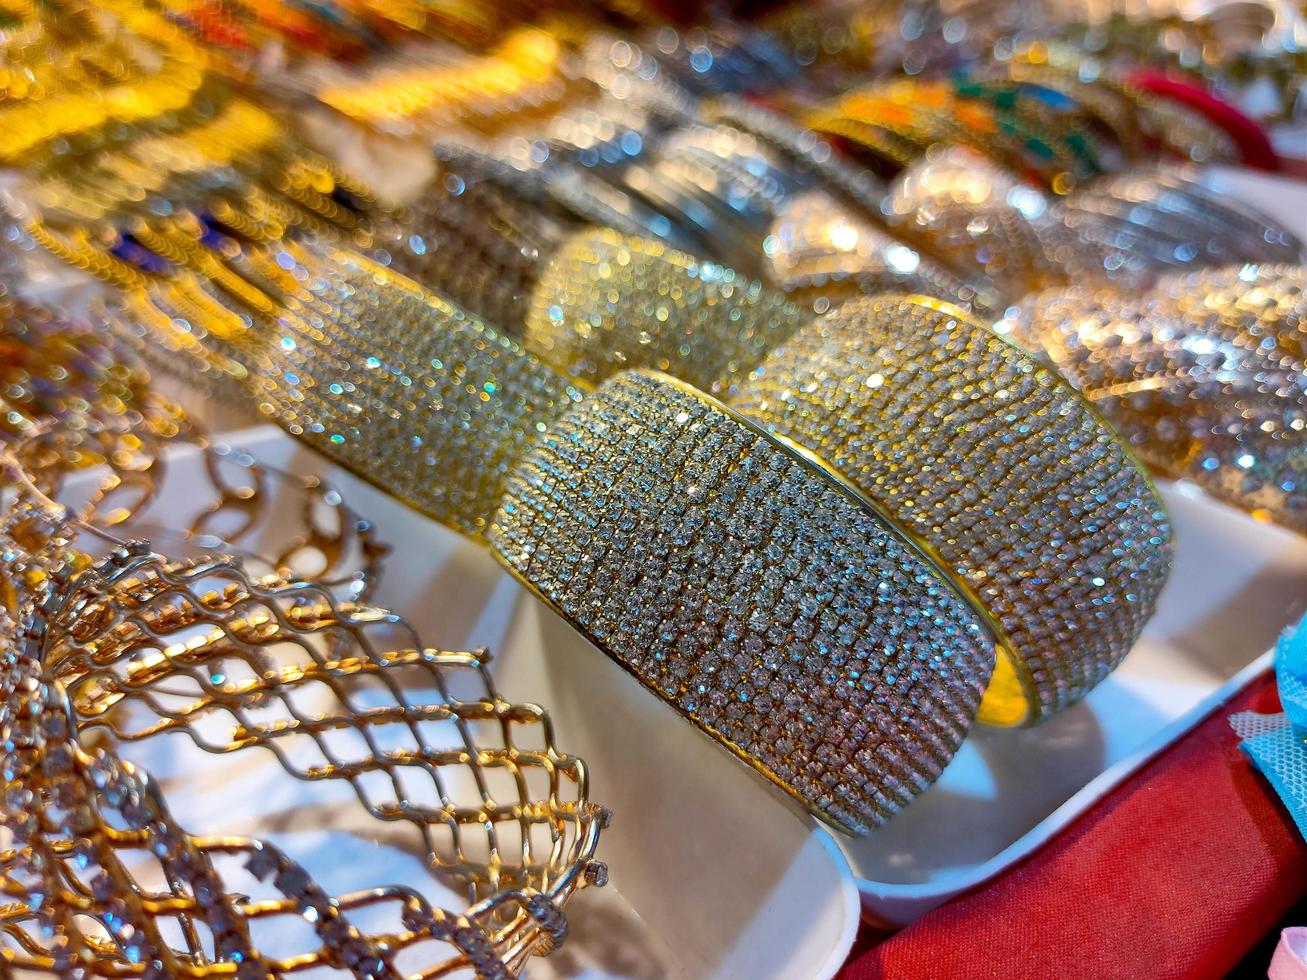 brazaletes coloridos de una tienda en bangladesh, fondo de brazaletes coloridos apilados con purpurina y brazaletes de colores lisos, brazaletes coloridos brillantes foto